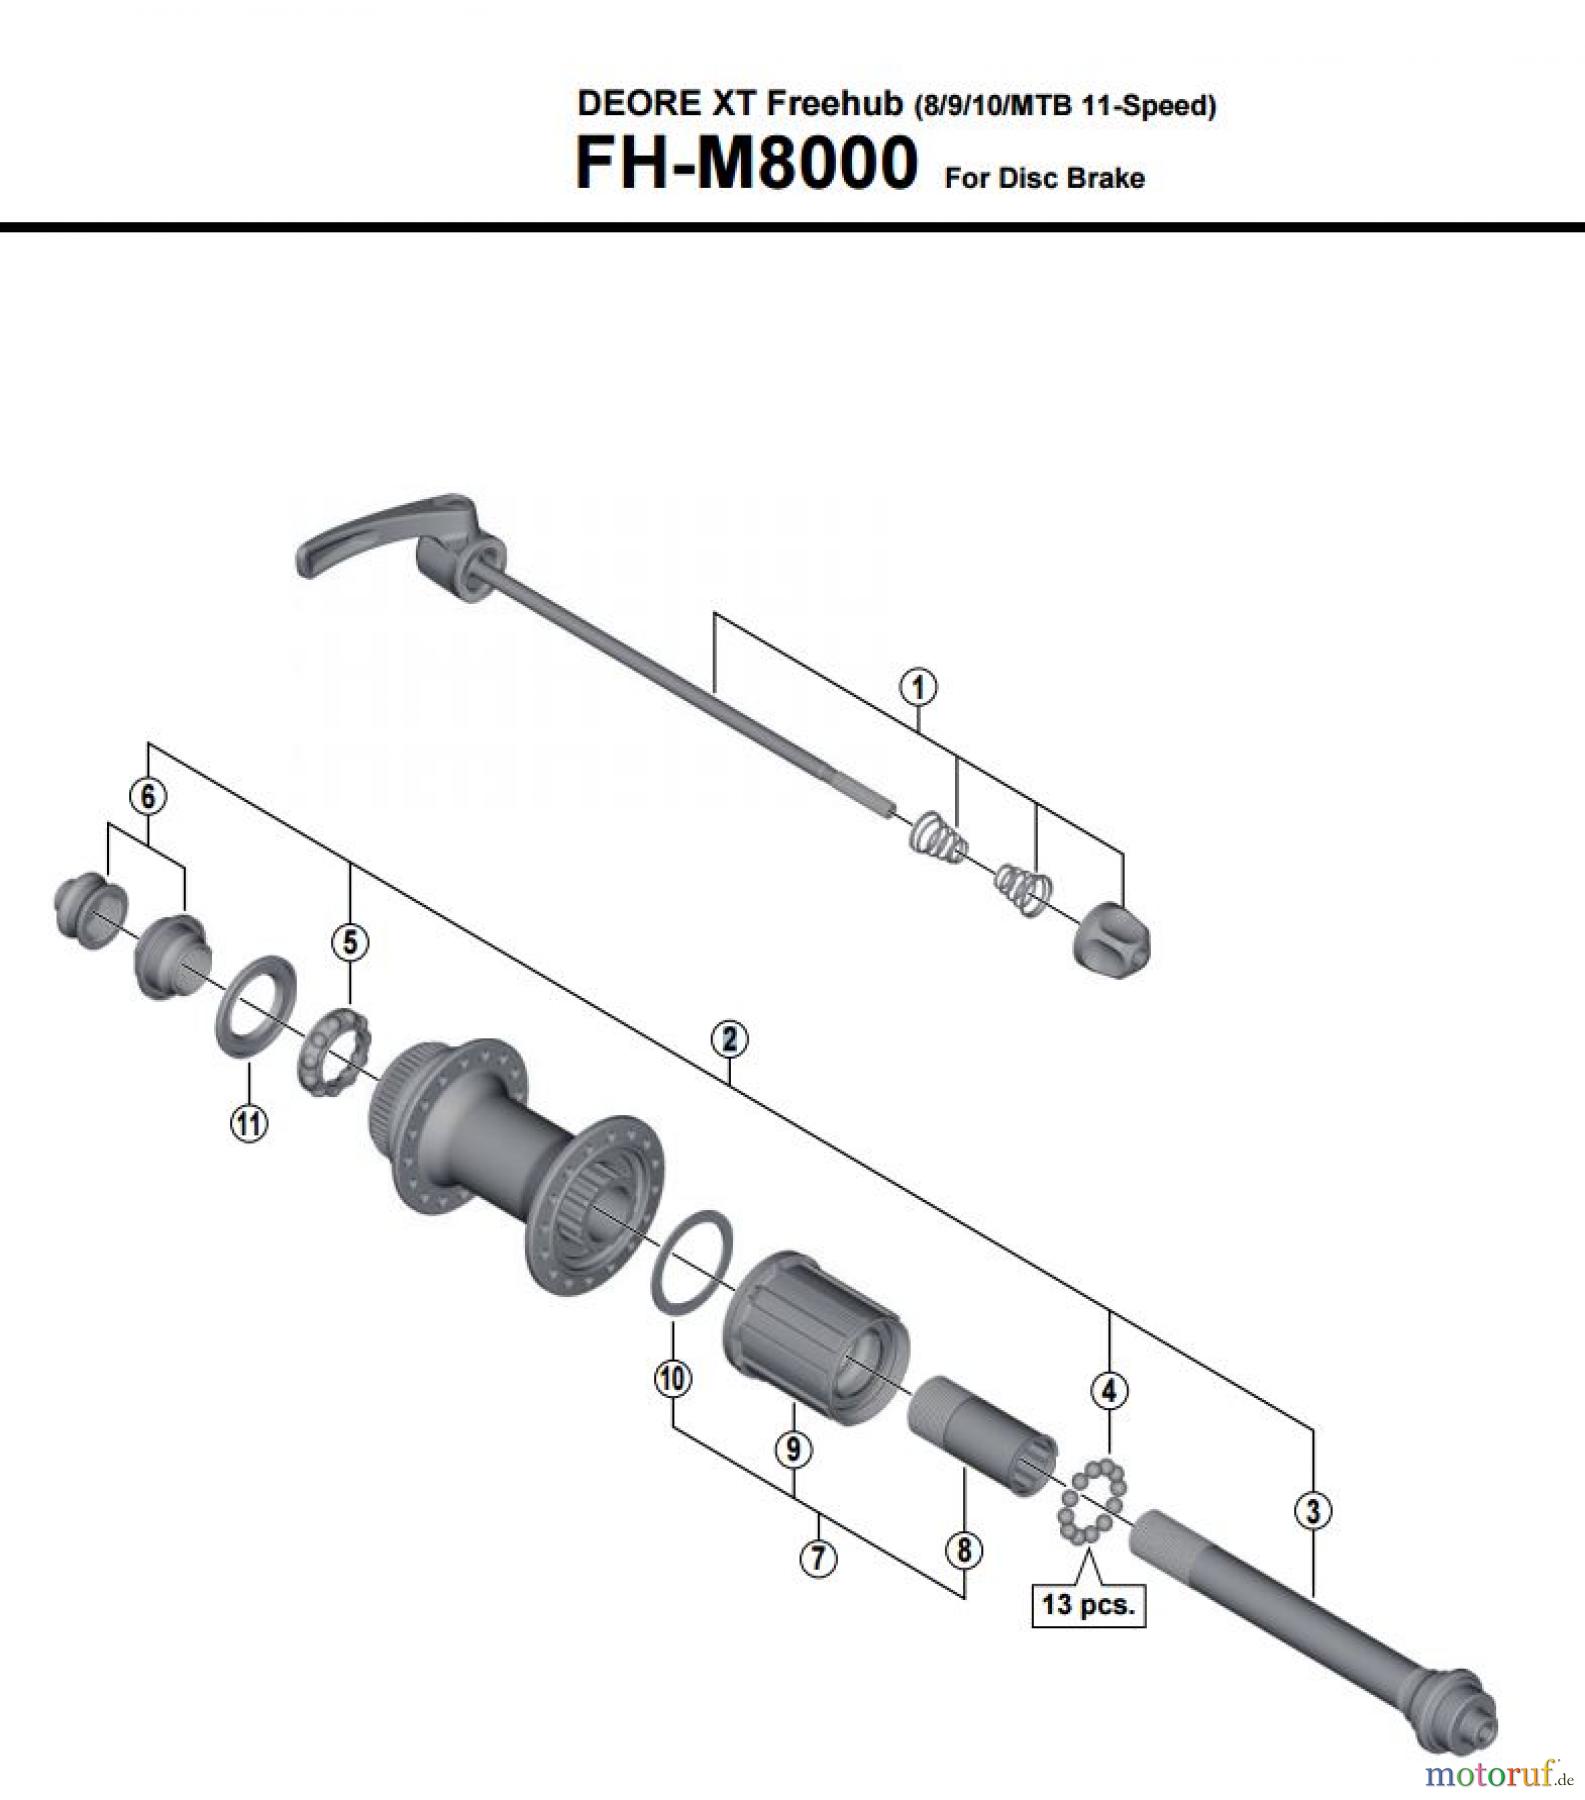  Shimano FH Free Hub - Freilaufnabe FH-M8000  DEORE XT Freehub (8/9/10/MTB 11-Speed)